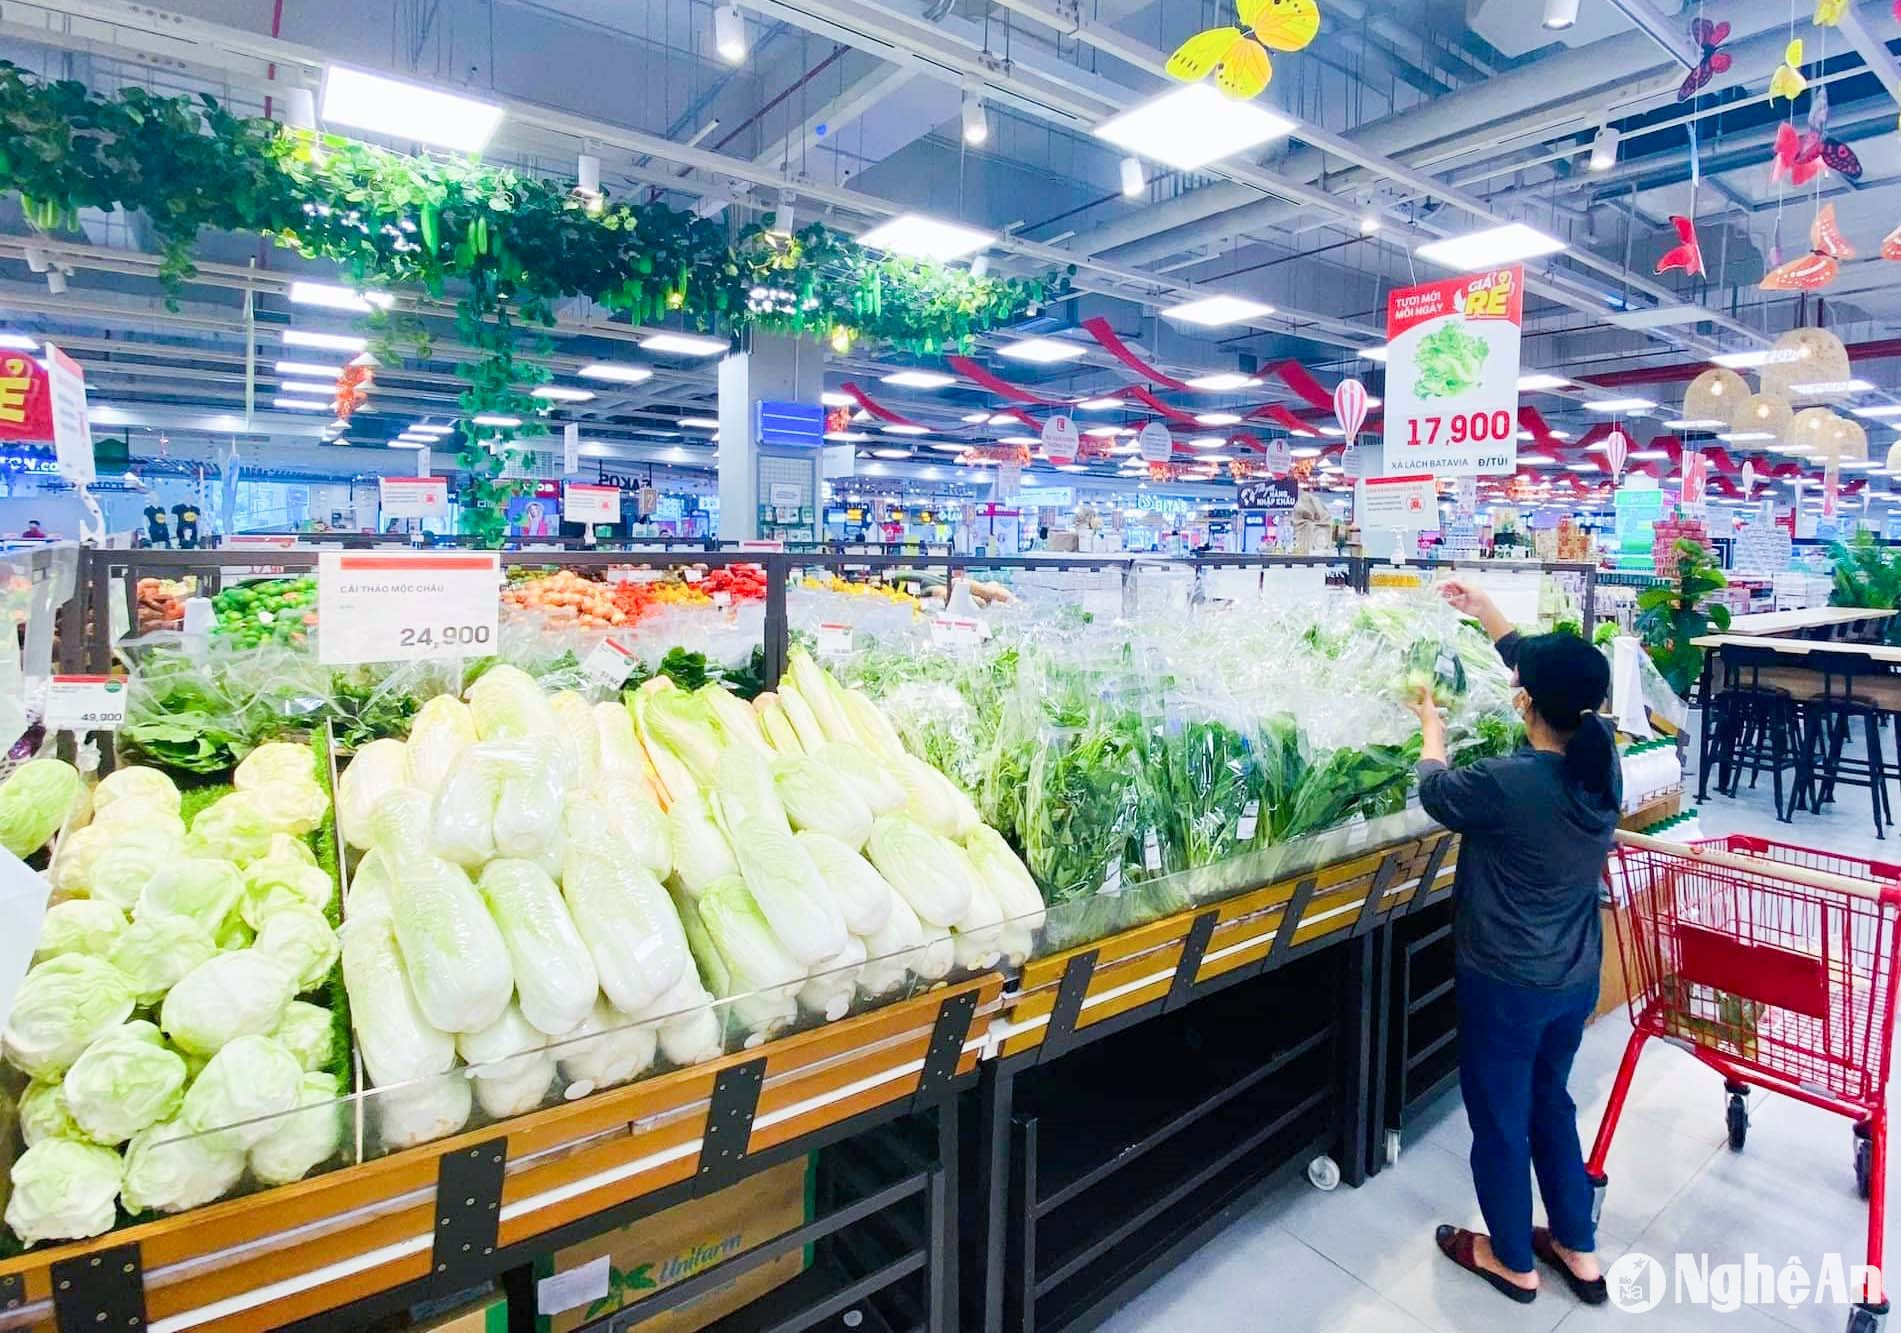  Tại các siêu thị rau đa dạng, phong phú và giá rau nhich nhẹ so với trước. Ảnh: Thanh Phúc